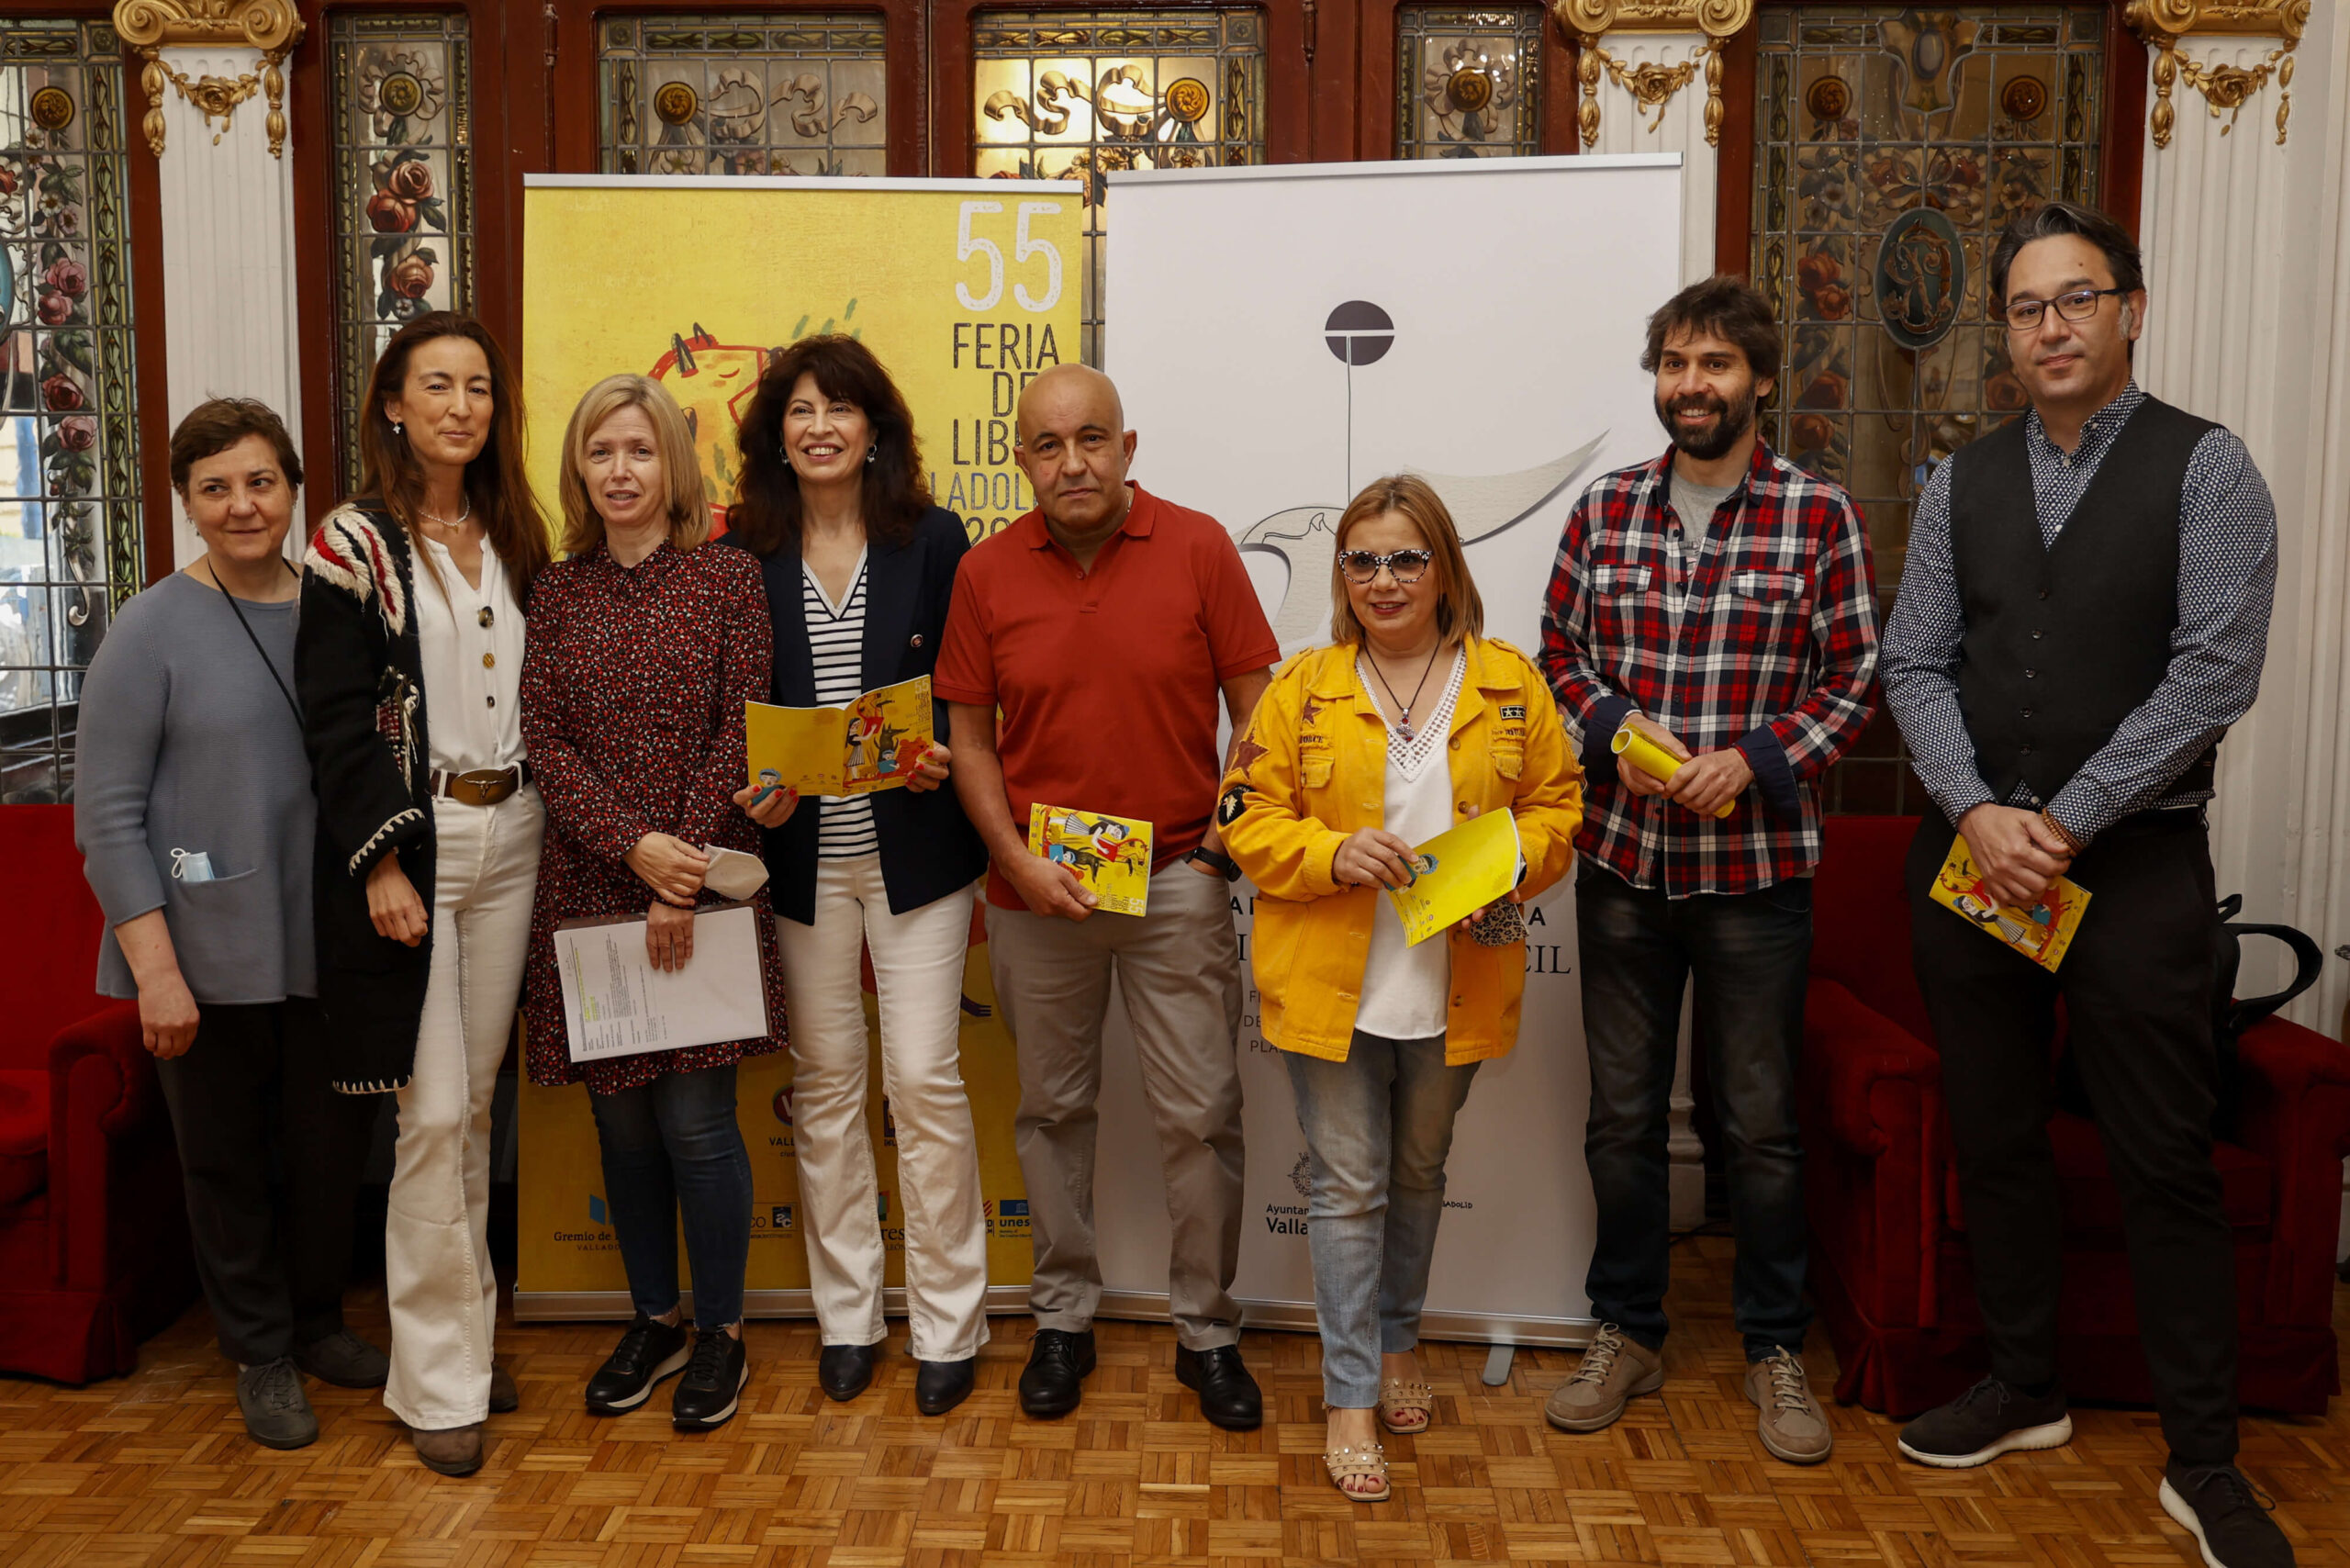 La Feria del Libro de Valladolid programa un centenar de actividades culturales con la presencia destacada del irlandés John Banville y los españoles Muñoz Molina, Soler y Darío Villanueva